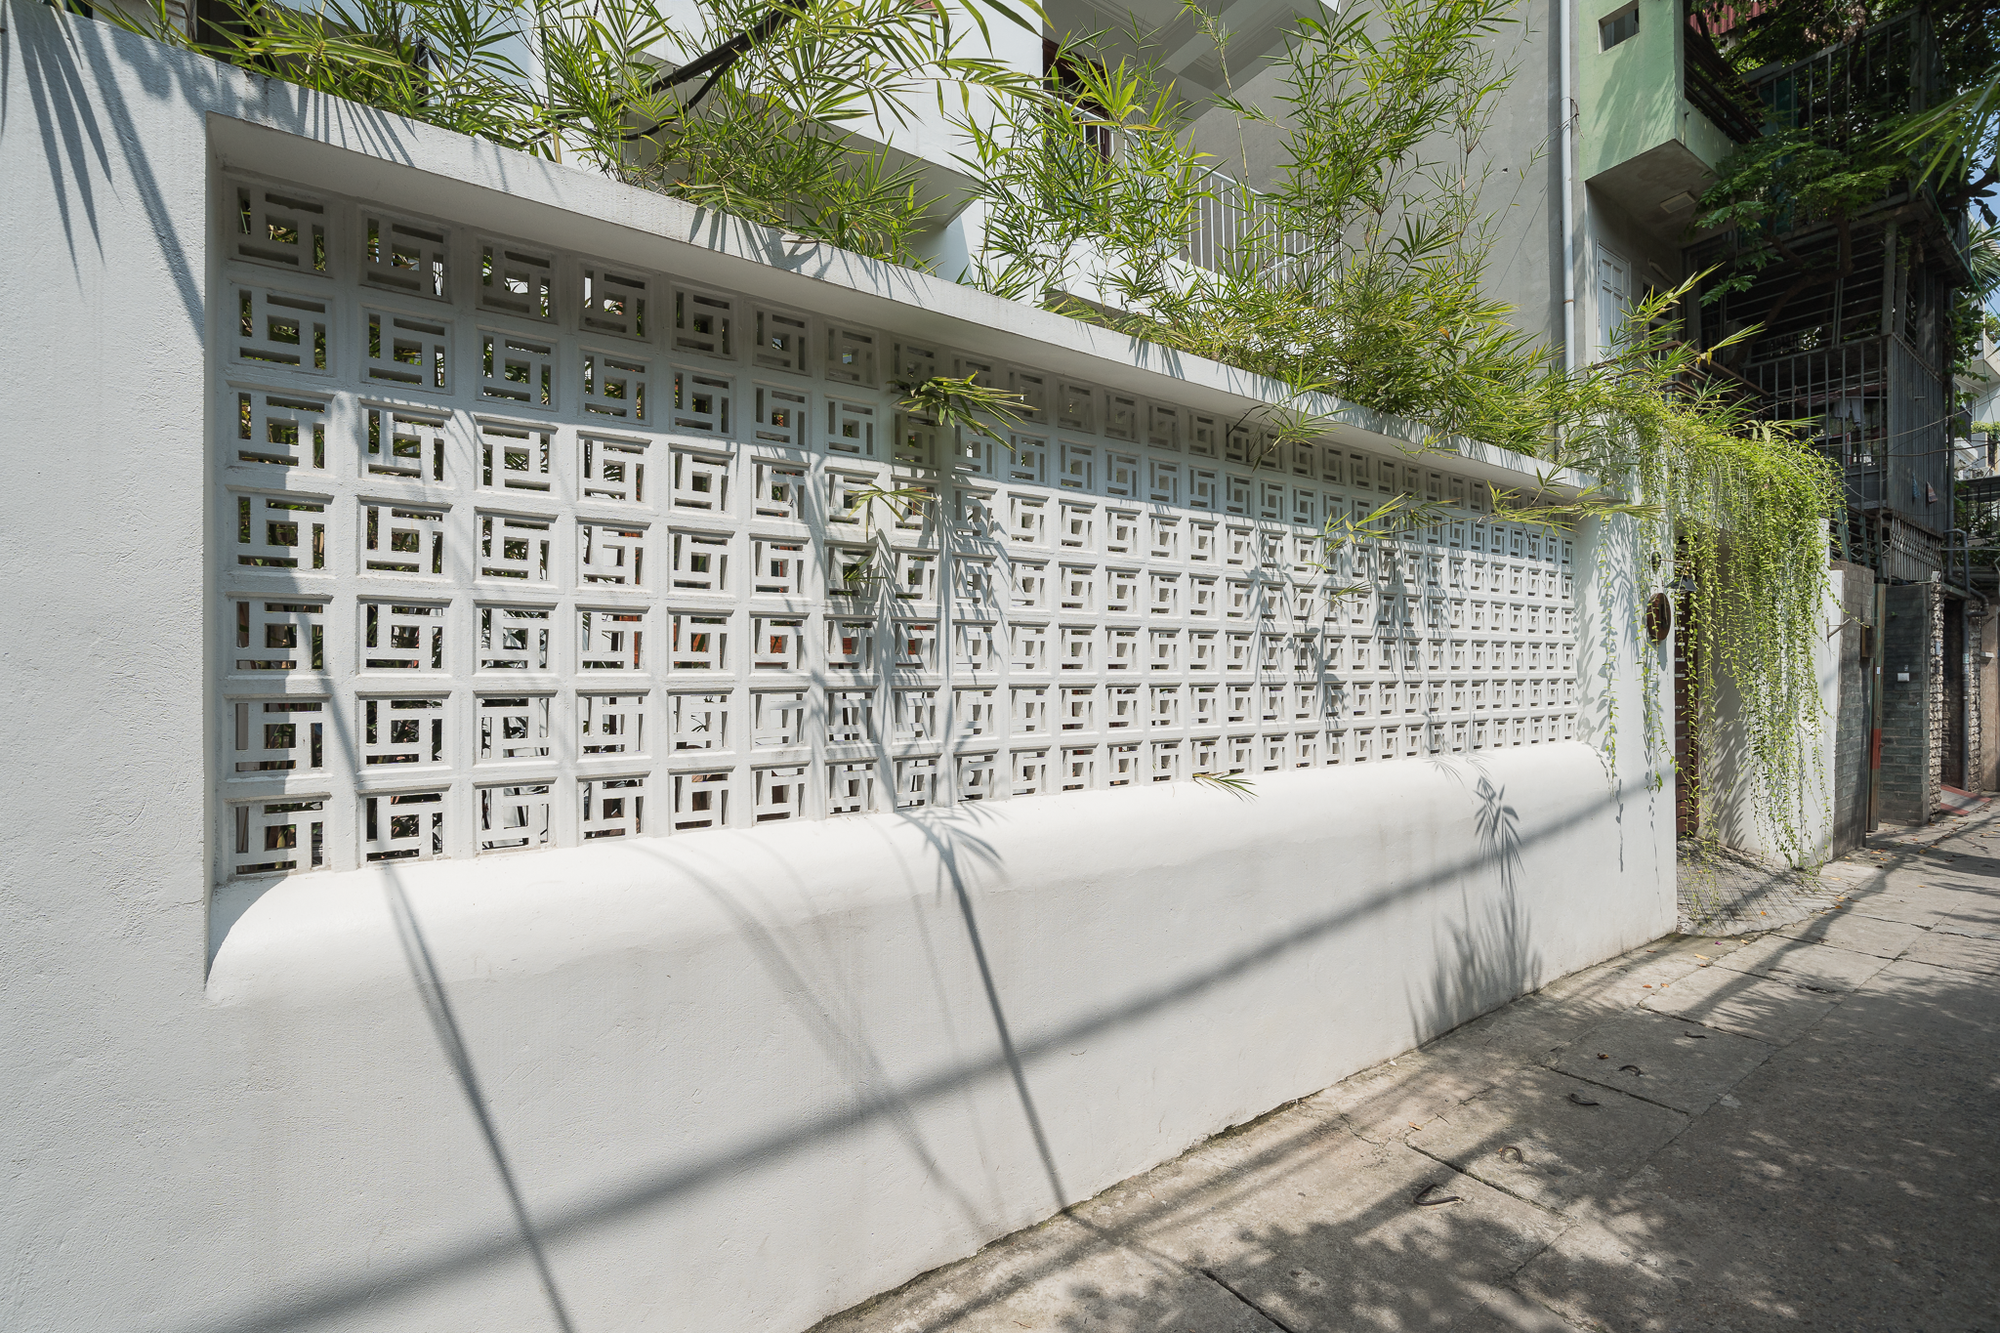 Cải tạo nhà ống có kiến trúc cũ ở Hà Nội, giải quyết bài toán an toàn khi gia đình có 4 thế hệ sống chung